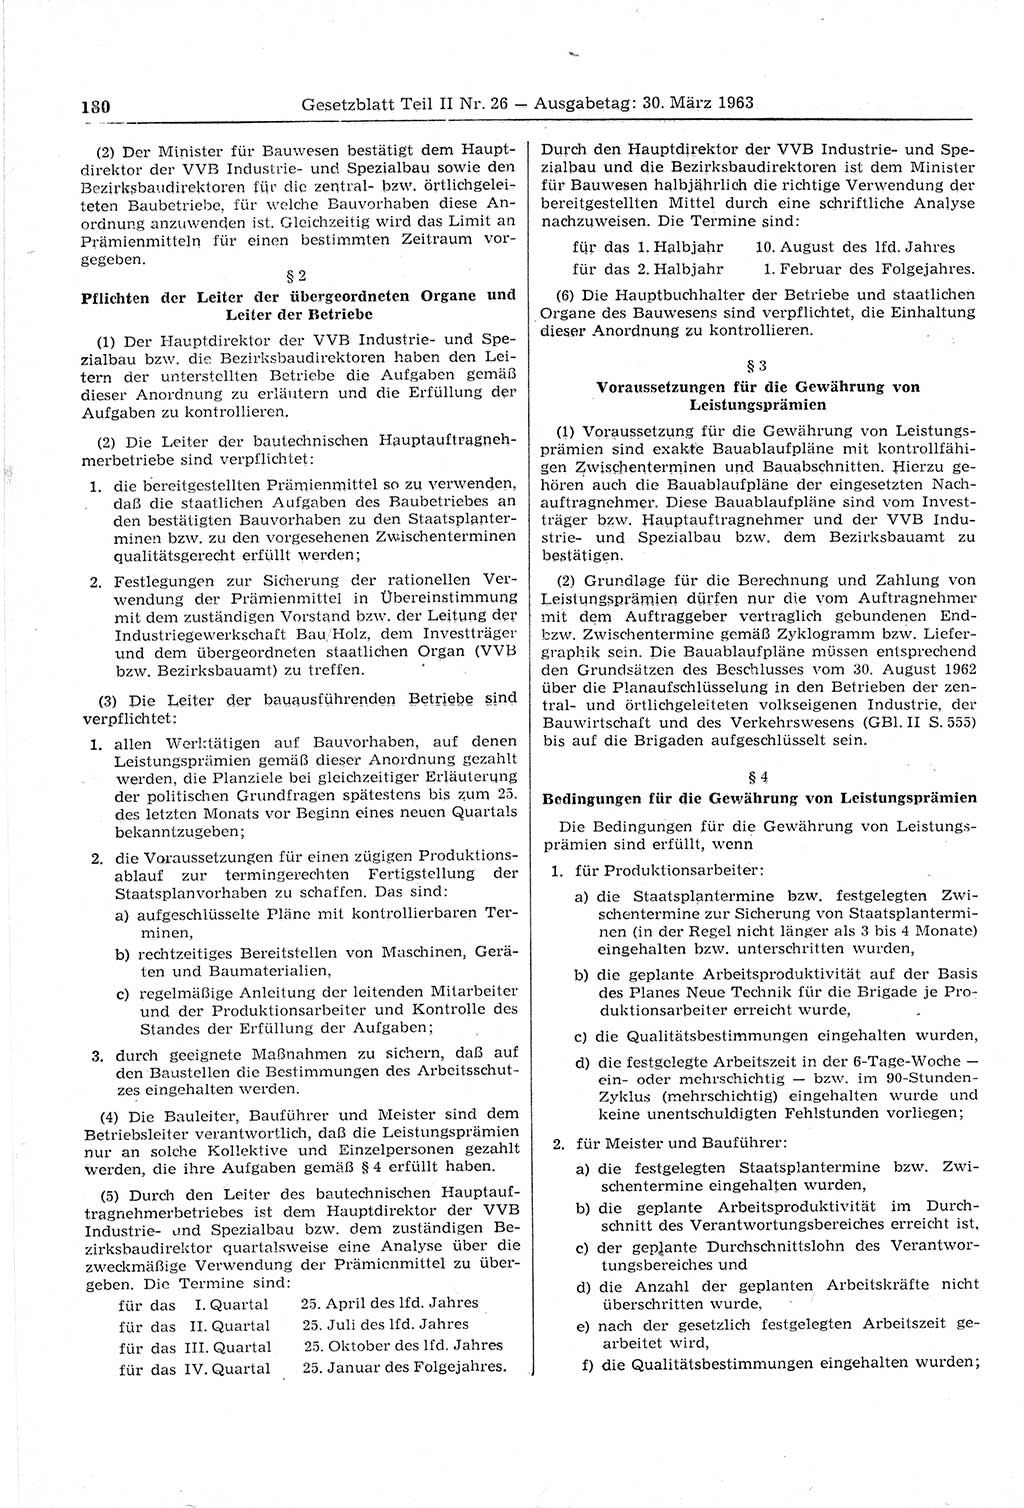 Gesetzblatt (GBl.) der Deutschen Demokratischen Republik (DDR) Teil ⅠⅠ 1963, Seite 180 (GBl. DDR ⅠⅠ 1963, S. 180)